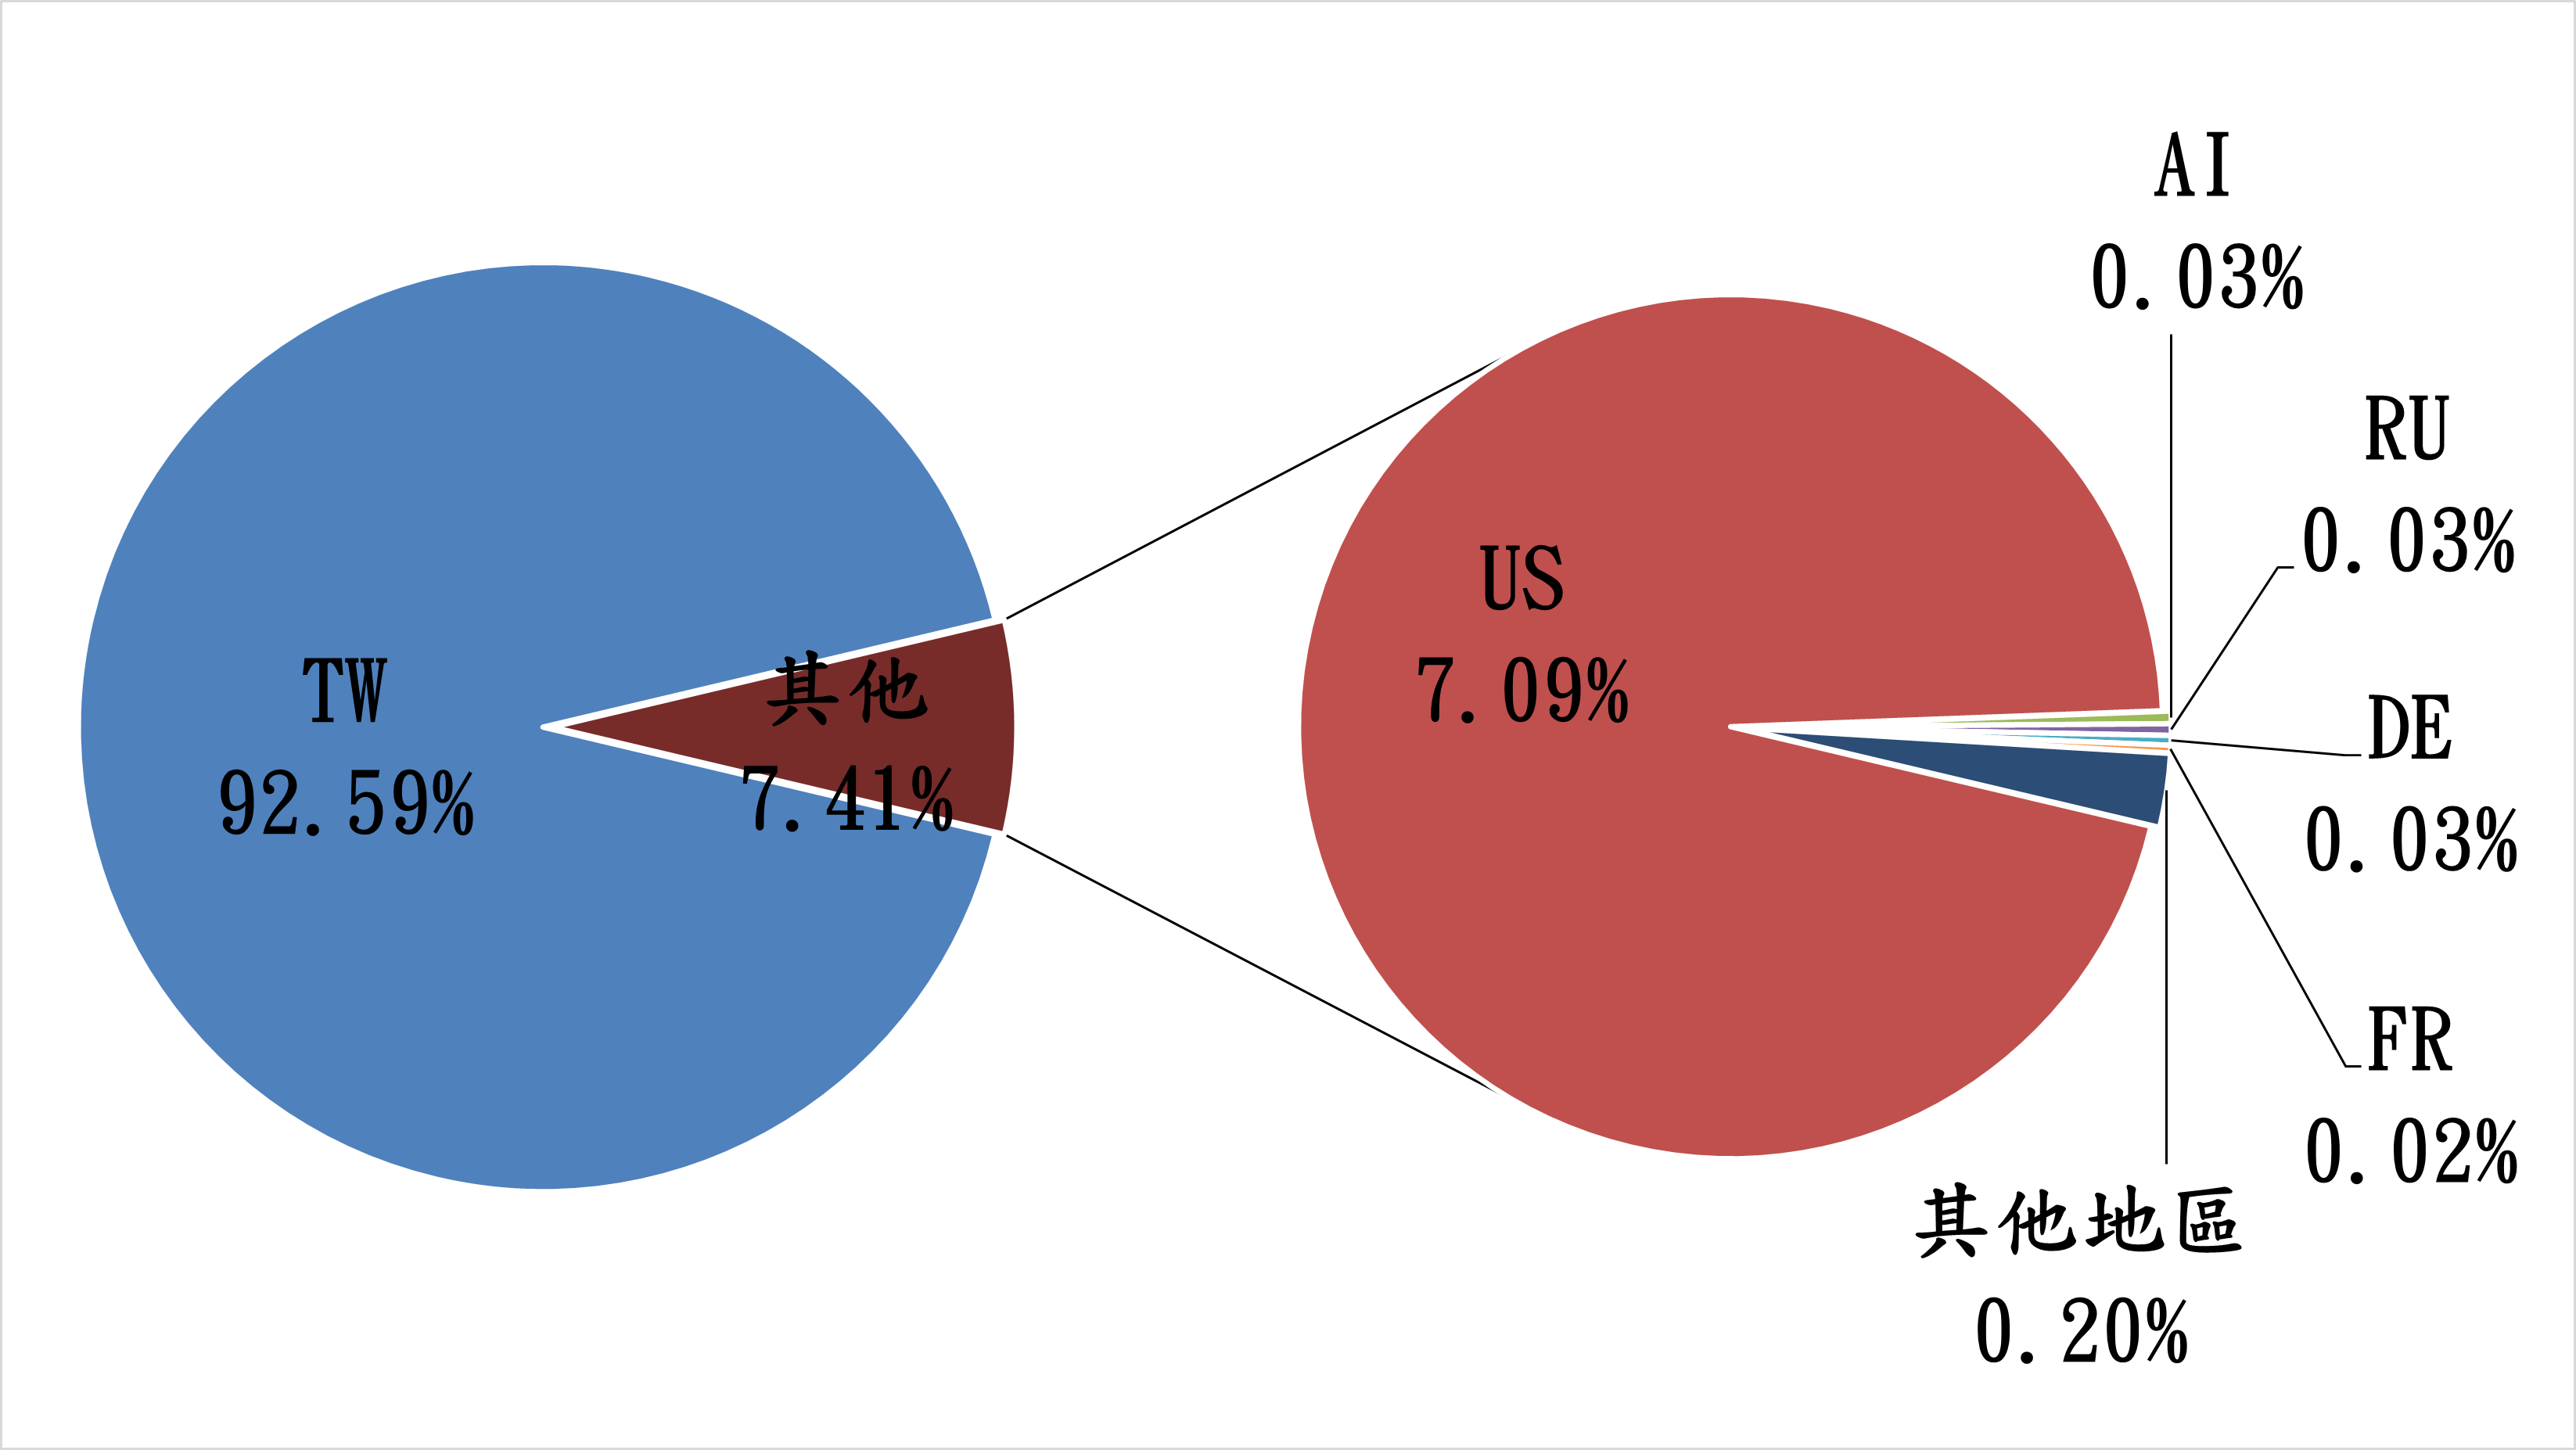 TW92.59% 其他7.41% US7.09% AI0.03% RU0.03% DE0.03% FR0.02% 其他地區0.20%